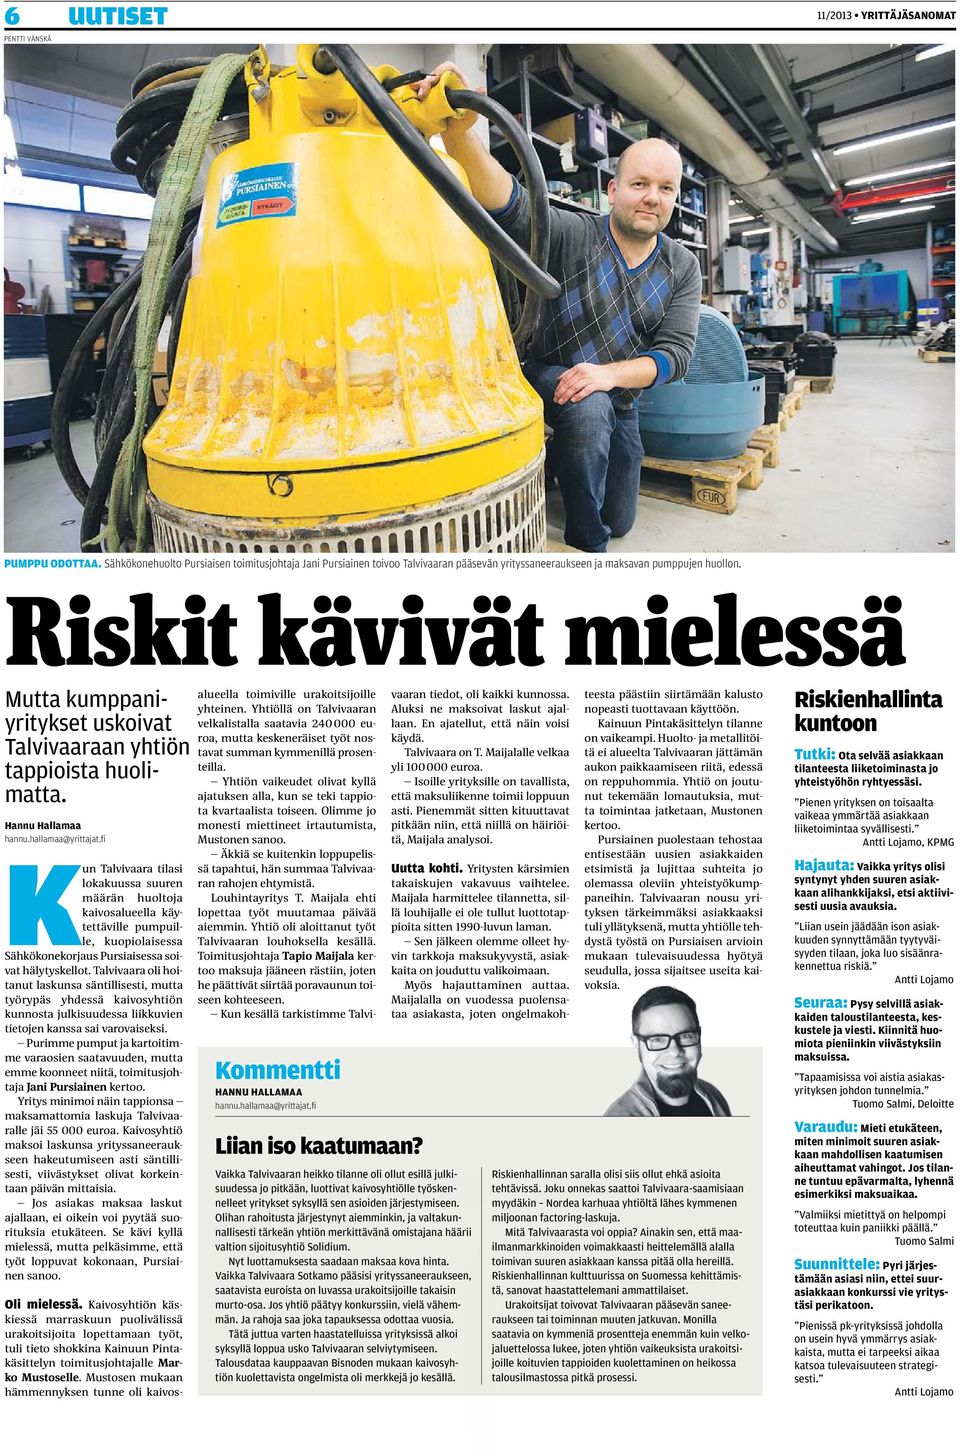 fi Kun Talvivaara tilasi lokakuussa suuren määrän huoltoja kaivosalueella käytettäville pumpuille, kuopiolaisessa Sähkökonekorjaus Pursiaisessa soivat hälytyskellot.